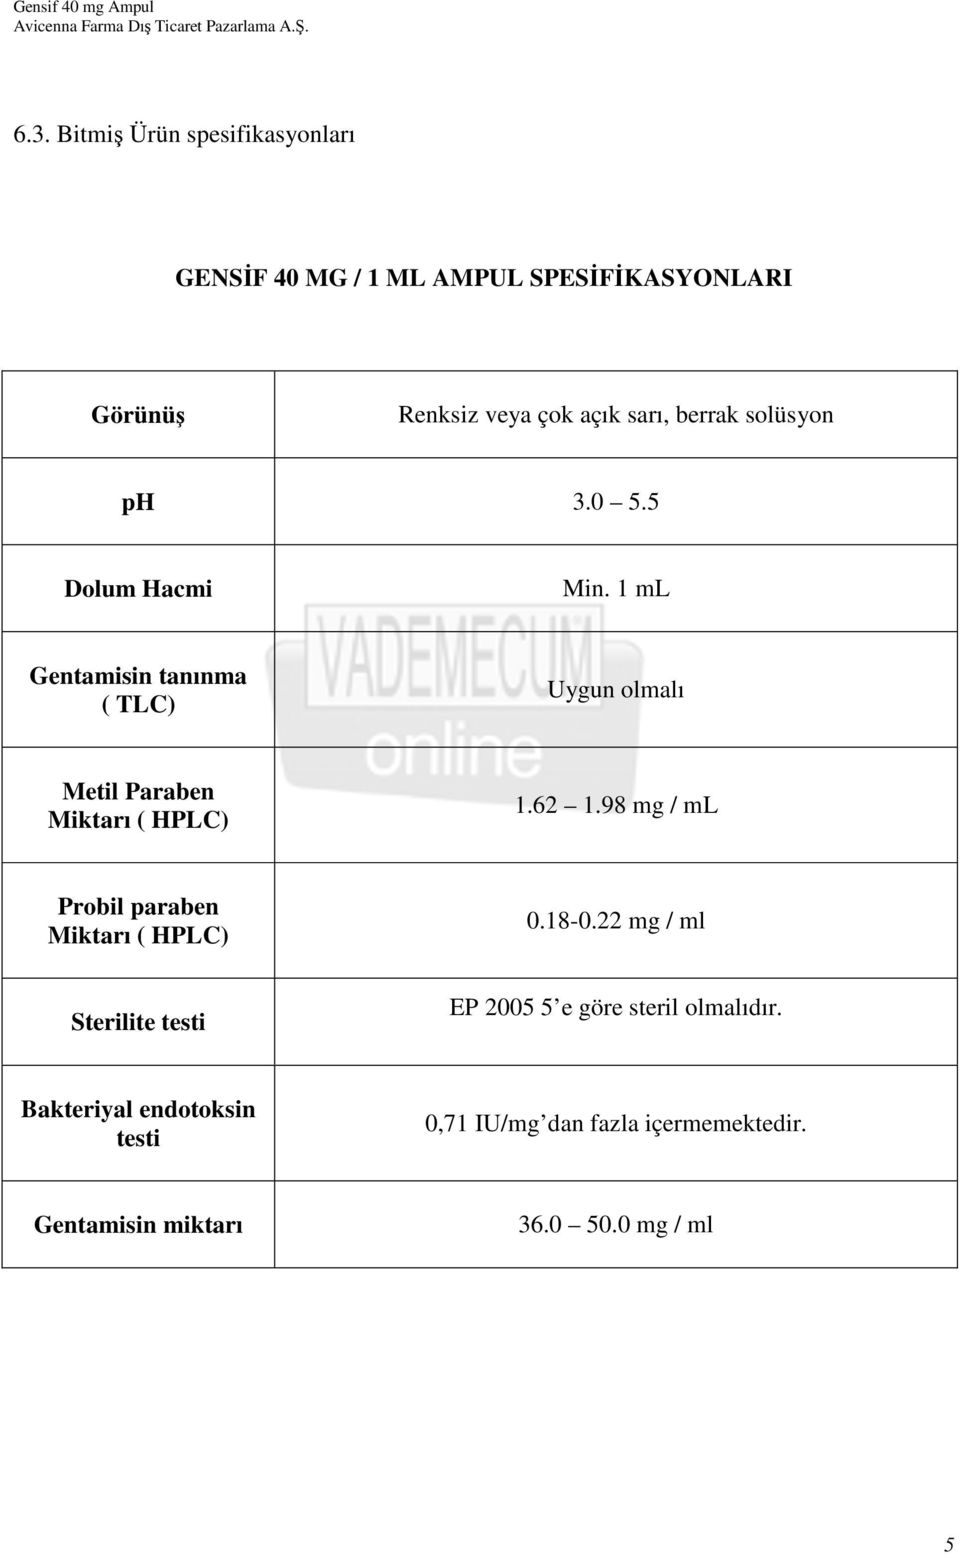 1 ml Gentamisin tanınma ( TLC) Uygun olmalı Metil Paraben Miktarı ( HPLC) 1.62 1.